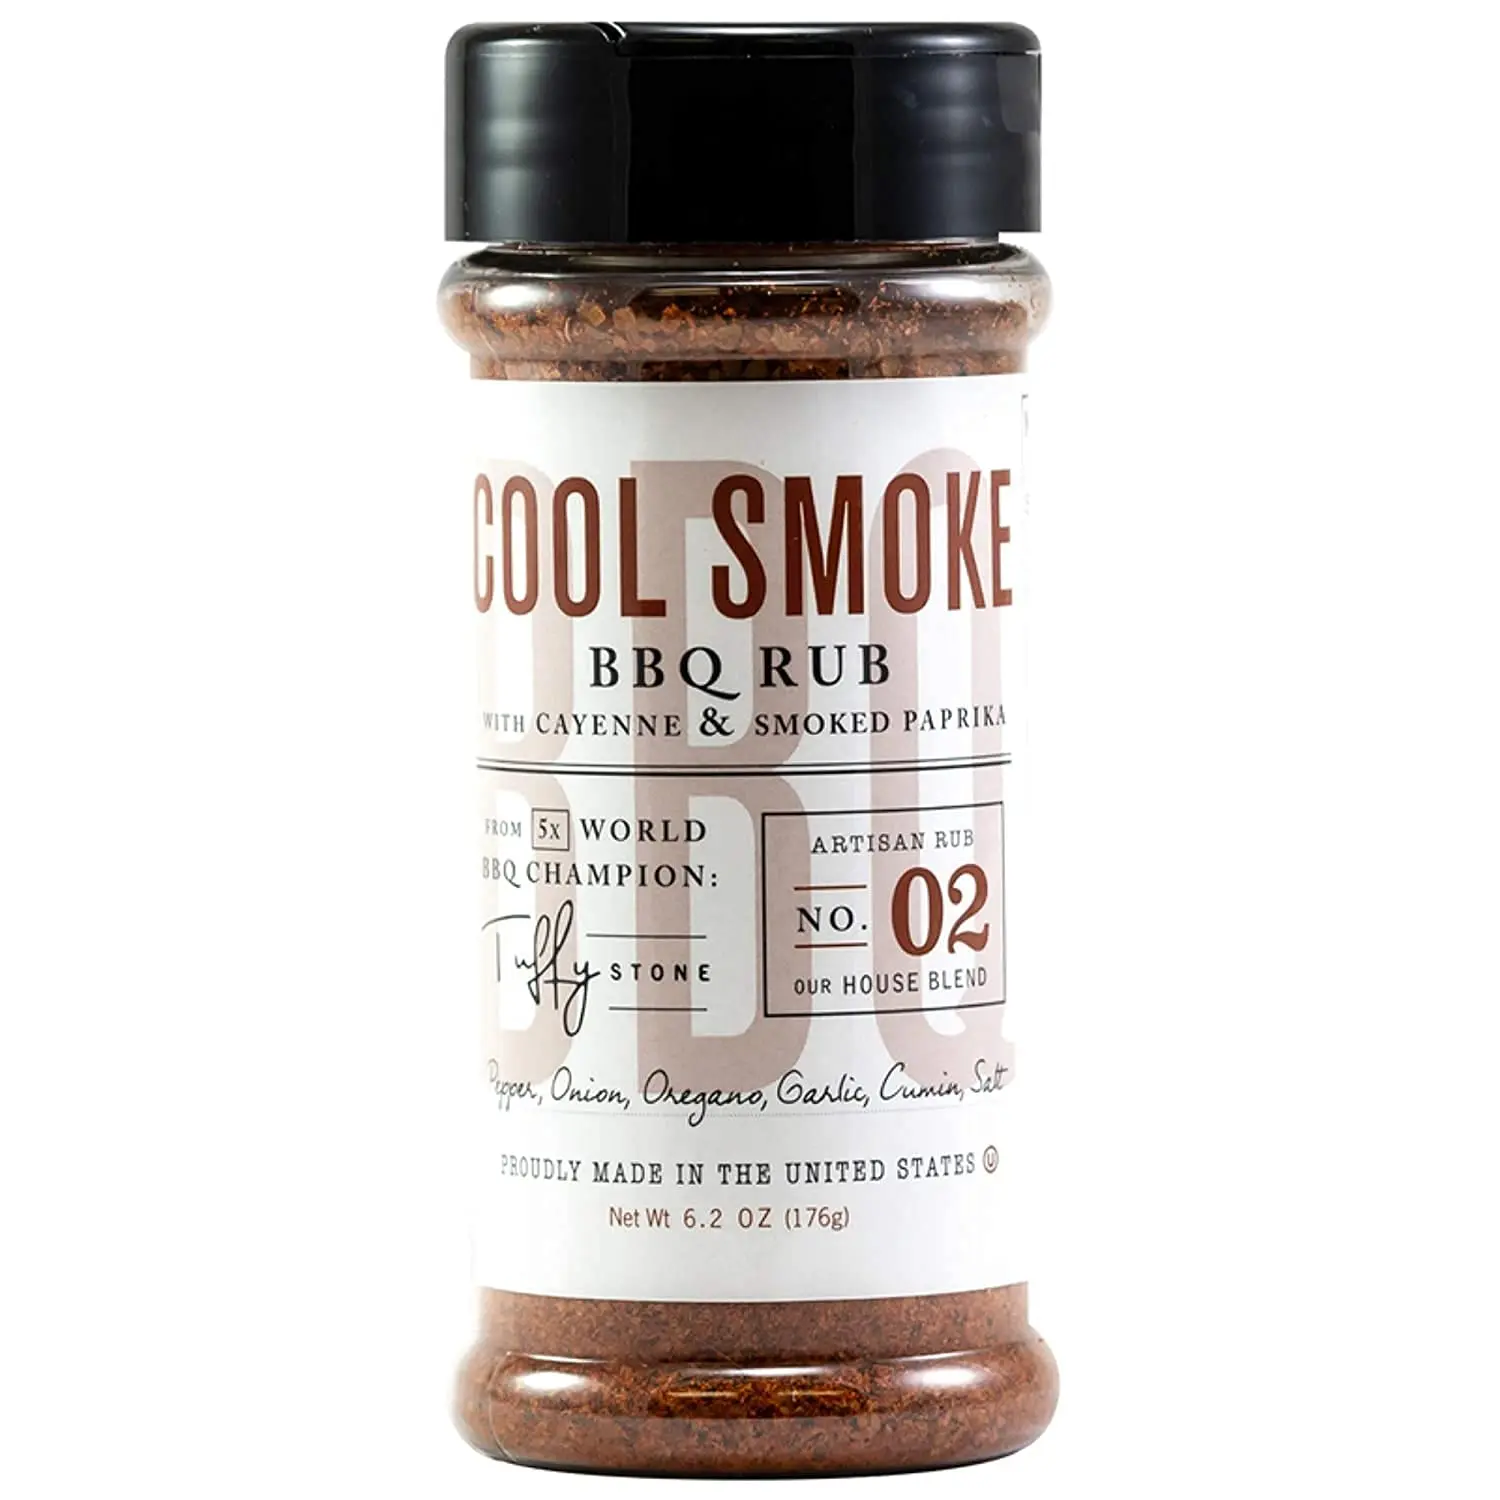 smoked bbq rub - What is BBQ rub made of